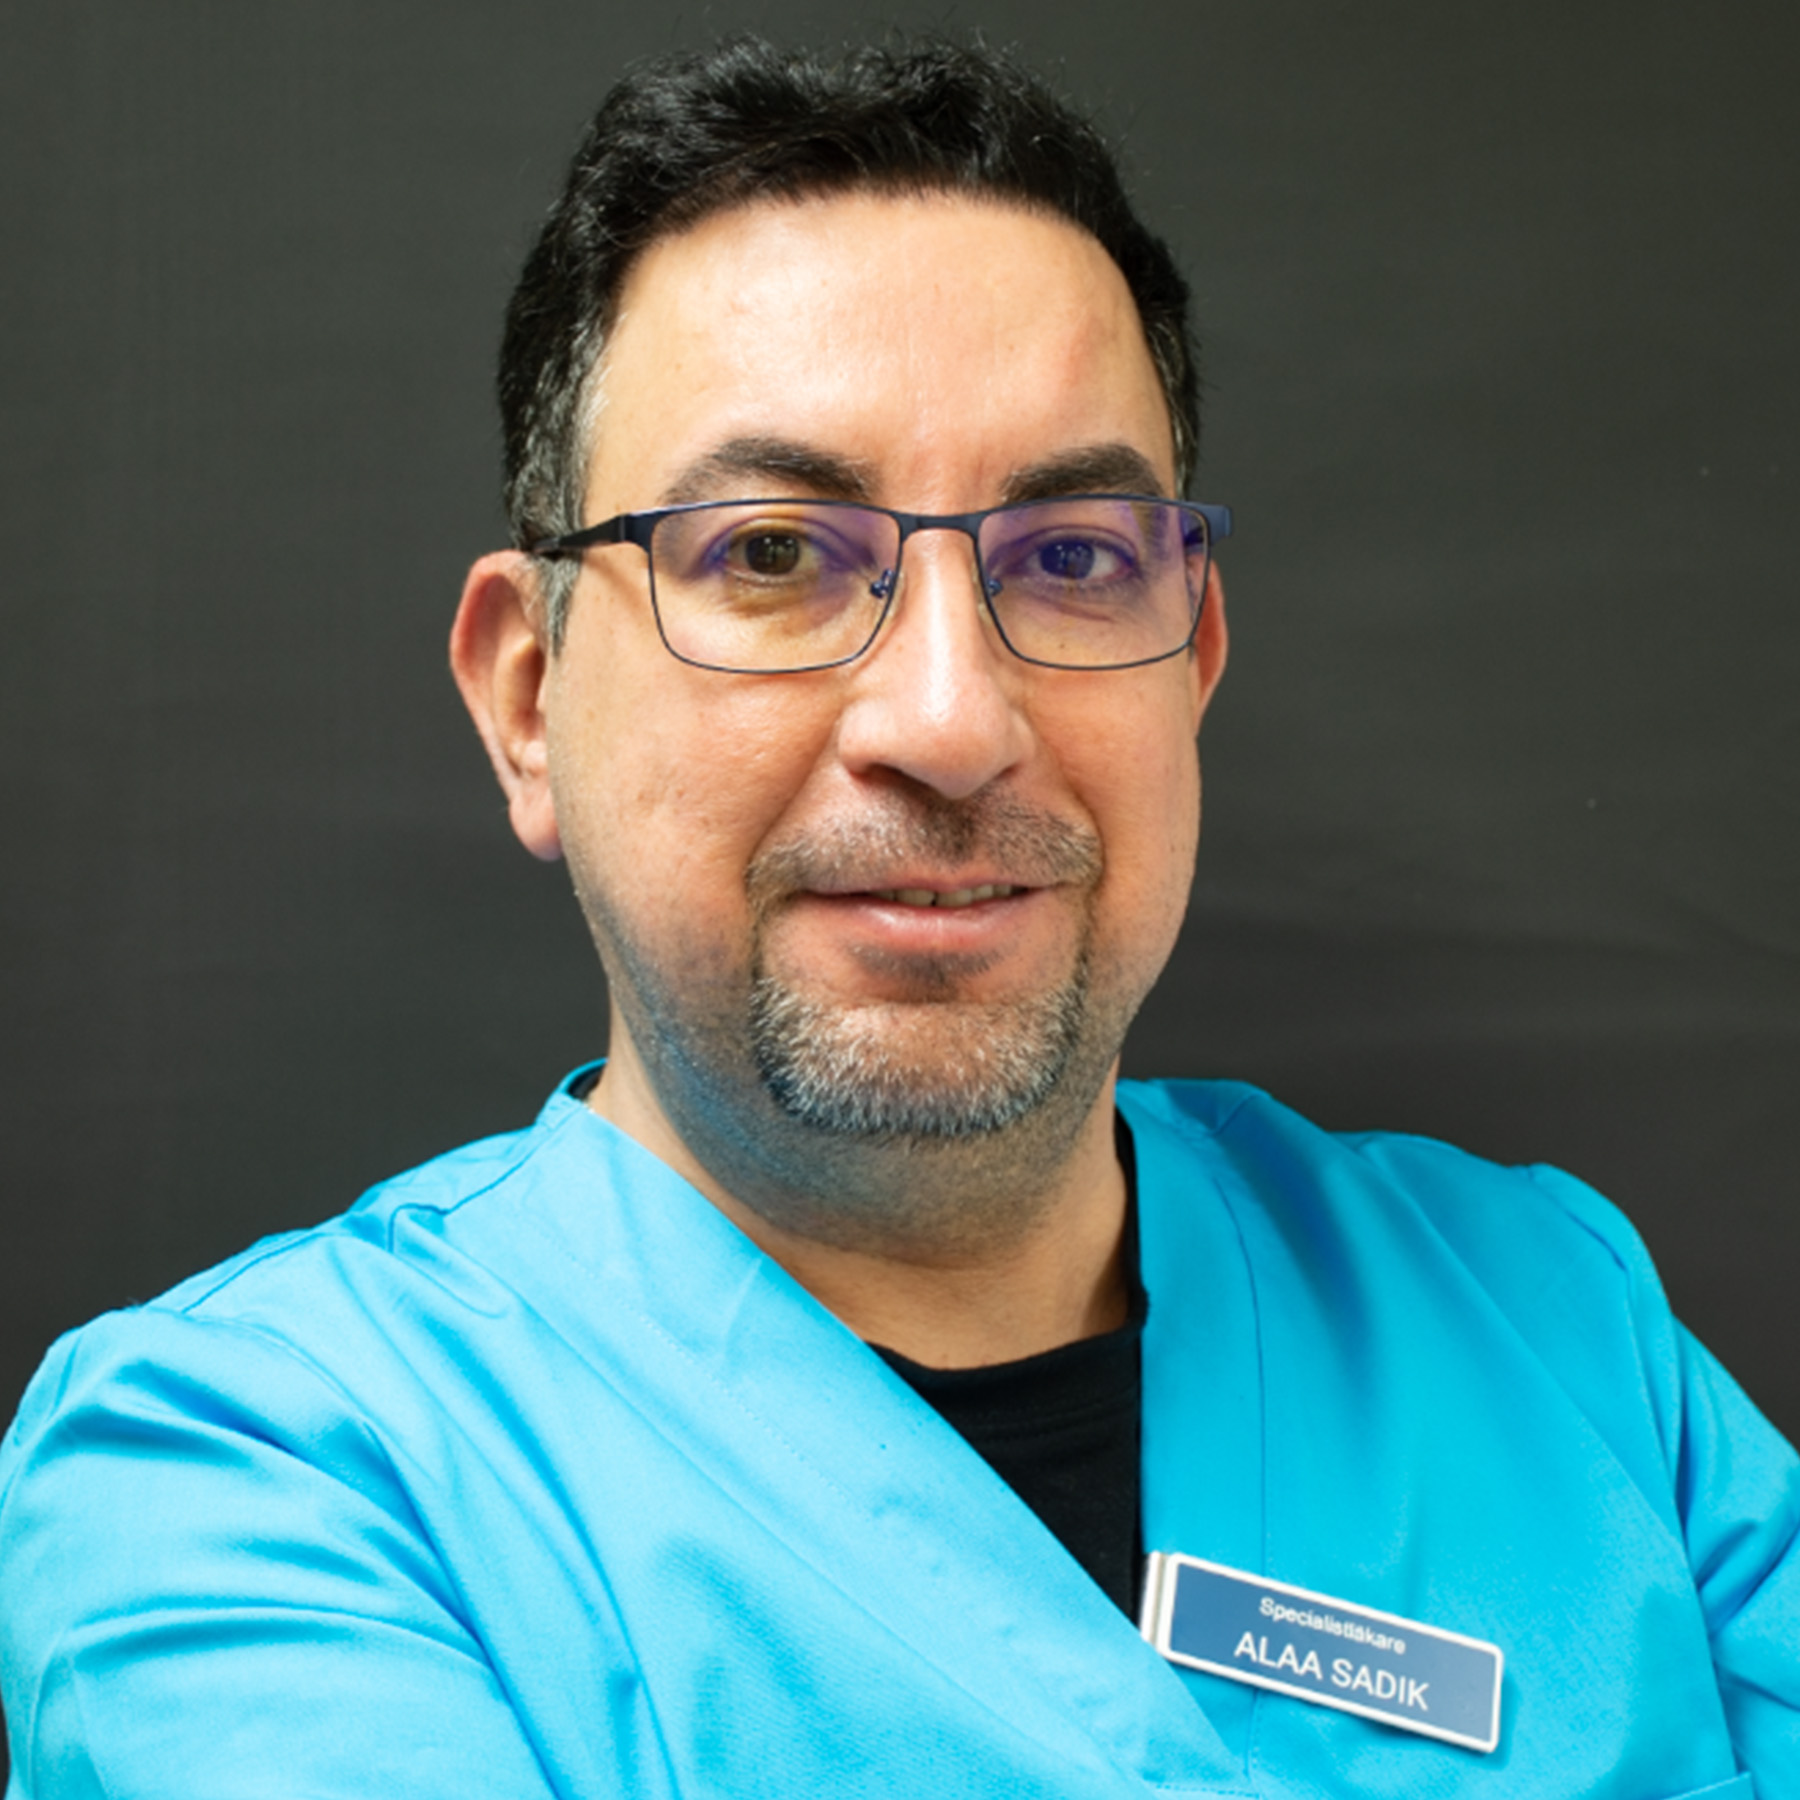 Dr Alaa Sadik specialistläkare inom allmän och estetisk medicin